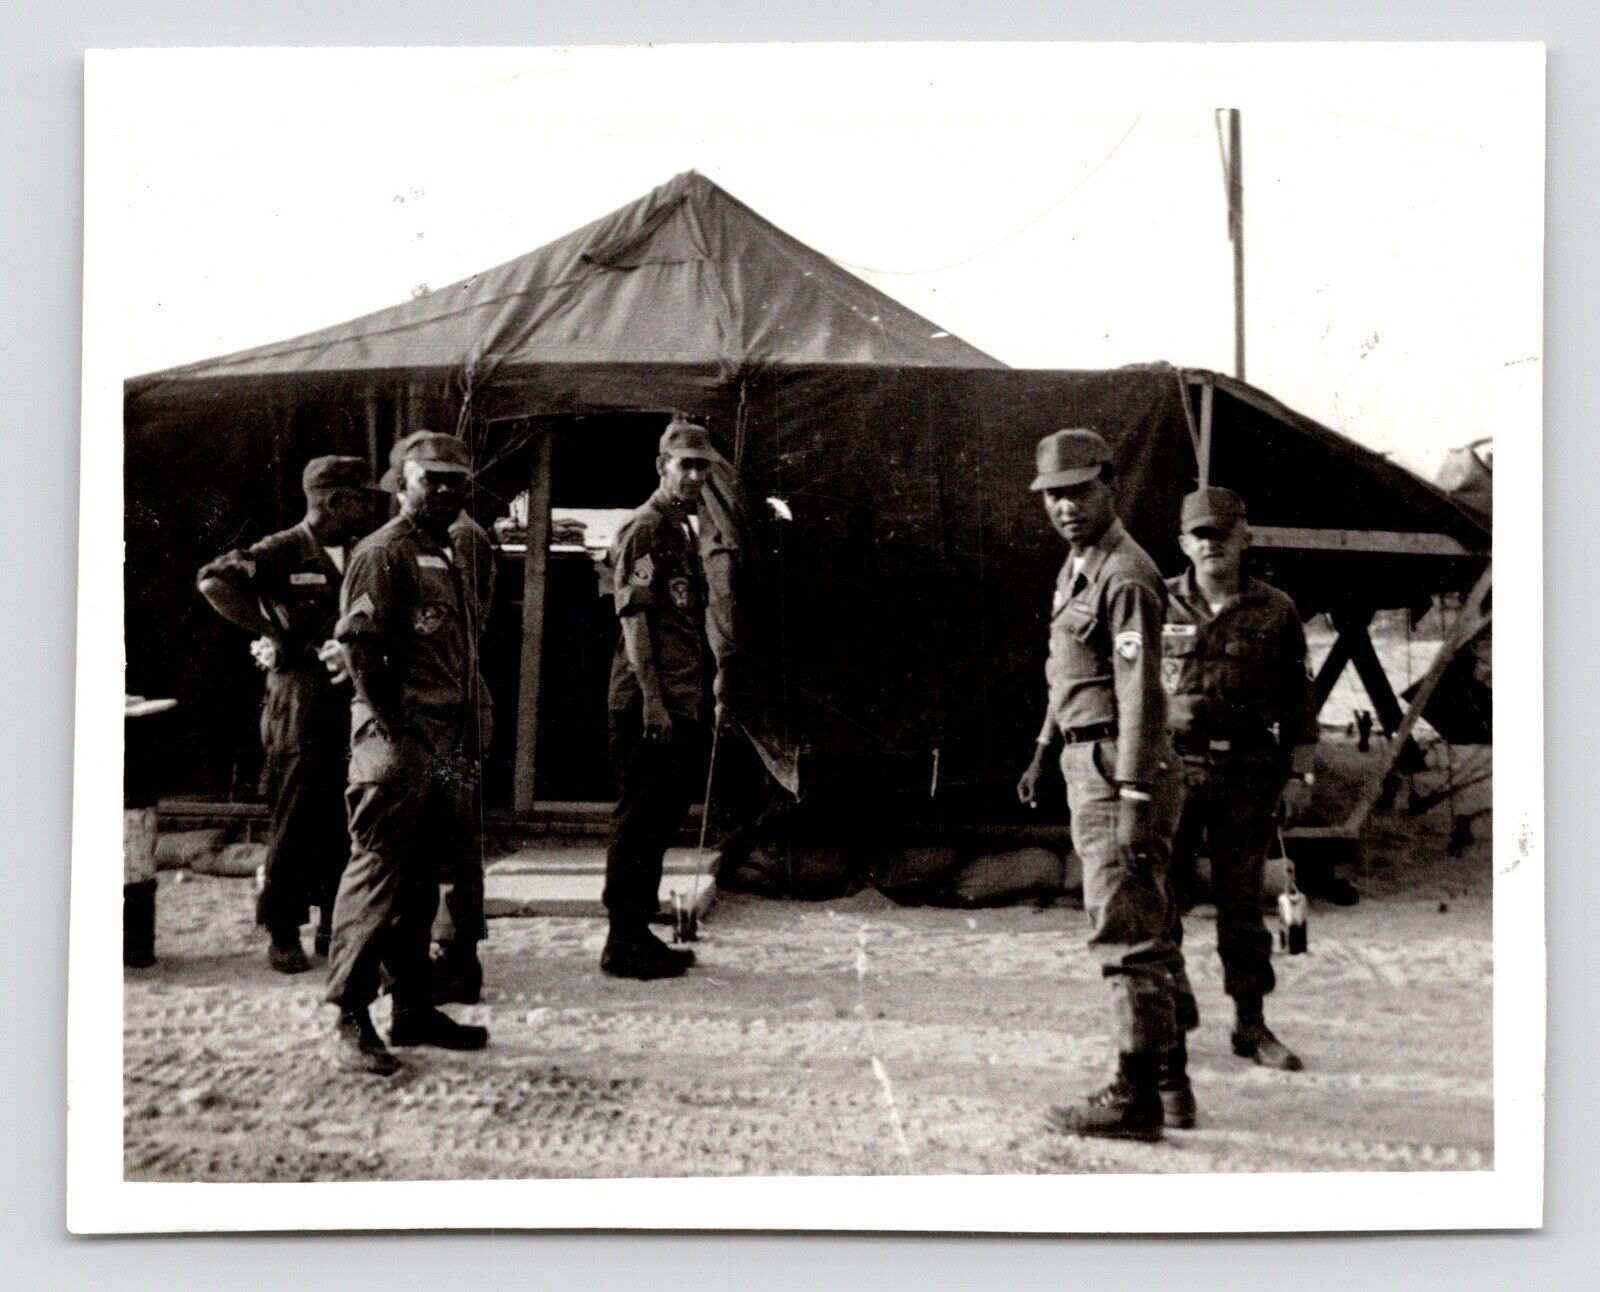 1965 Vietnam War US GI Army Men Around Tent In Camp Original Vintage Photo